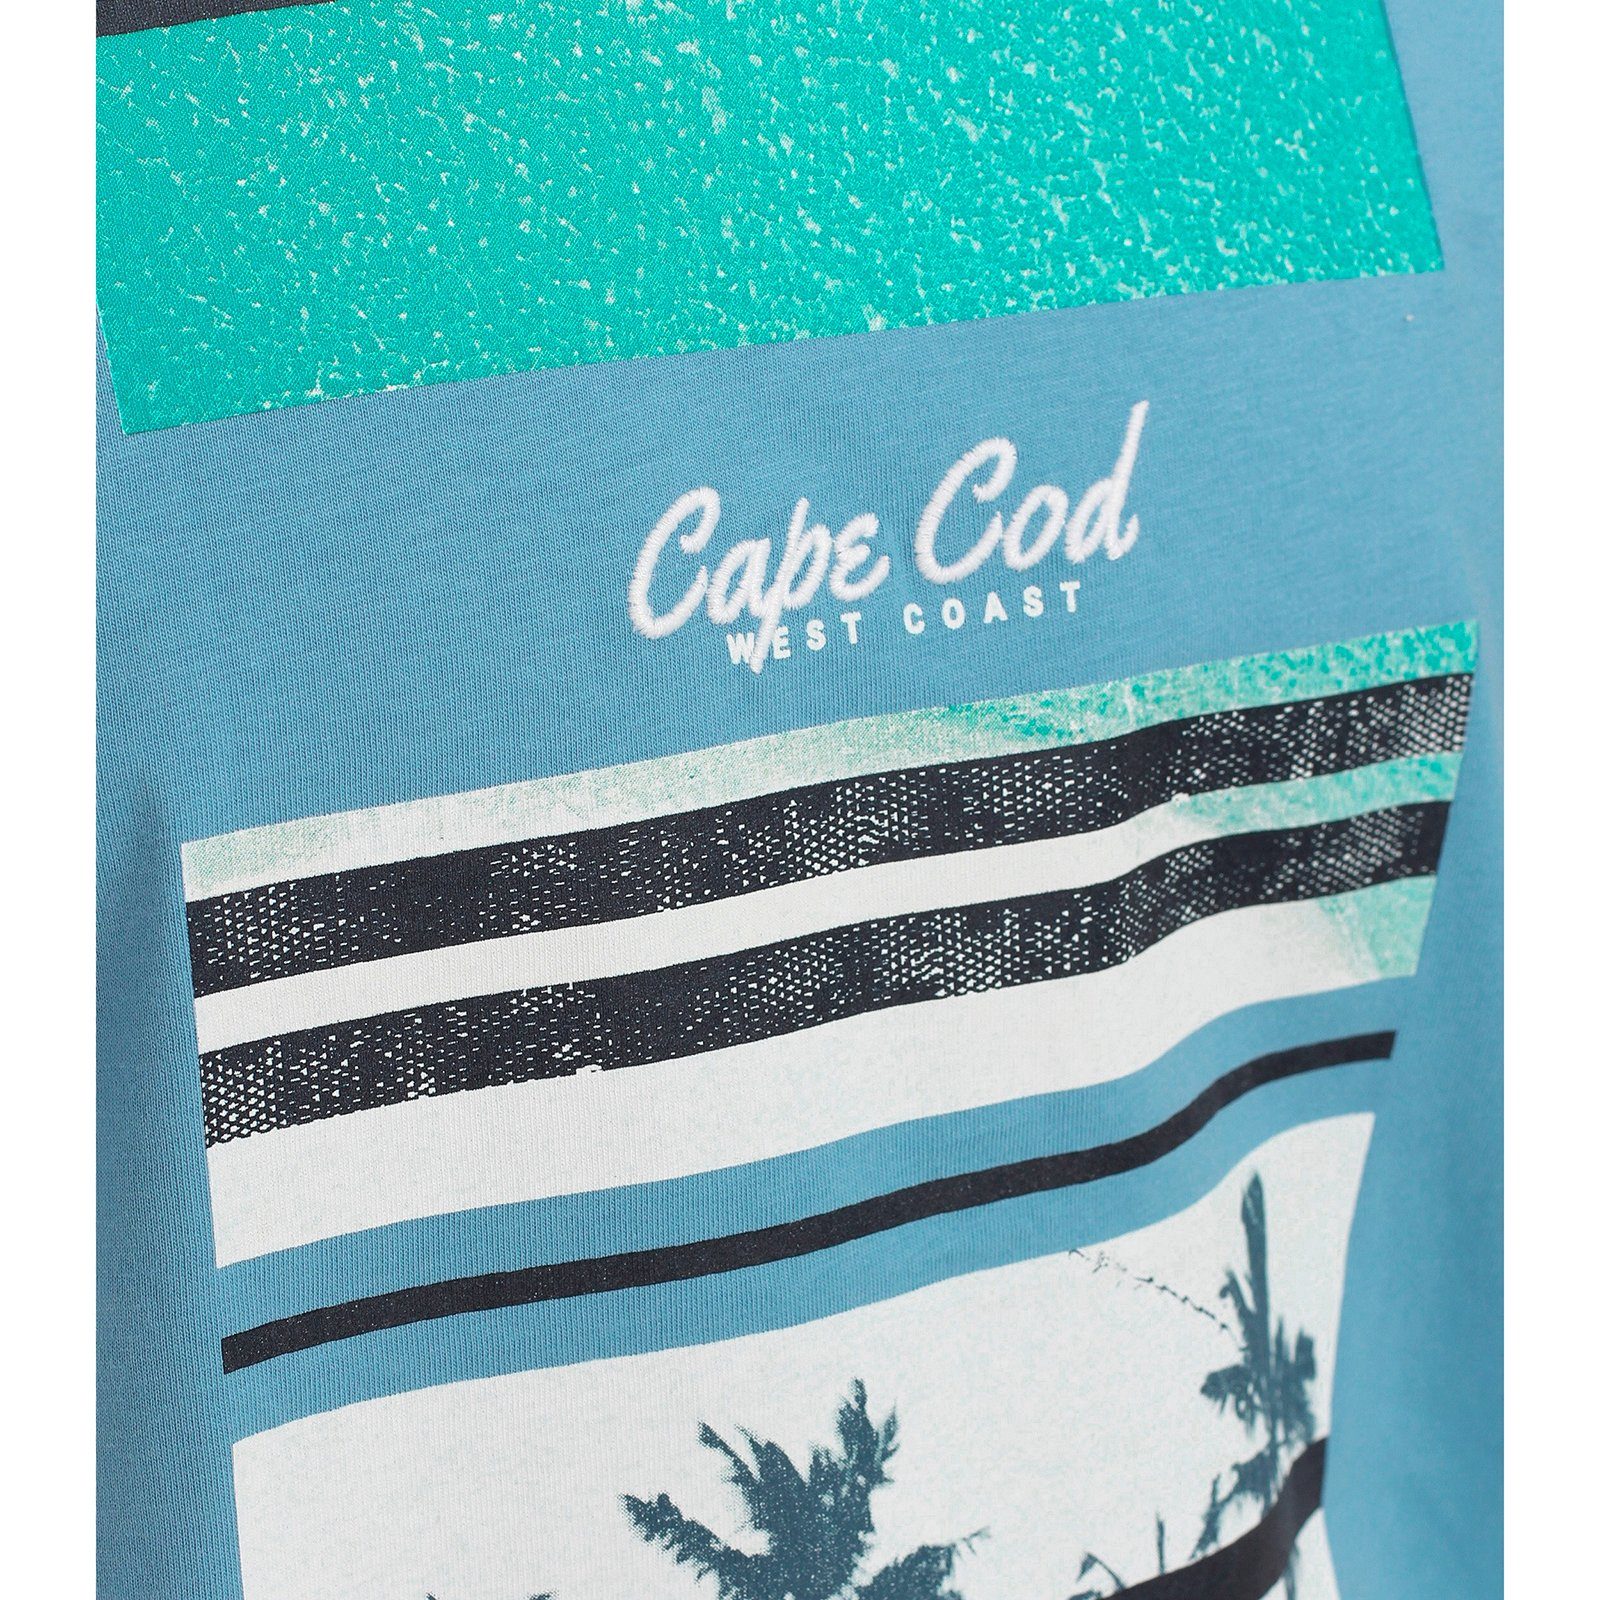 CasaModa blau Cod T-Shirt Cape Rundhalsshirt Größen CASAMODA Große Herren modisch